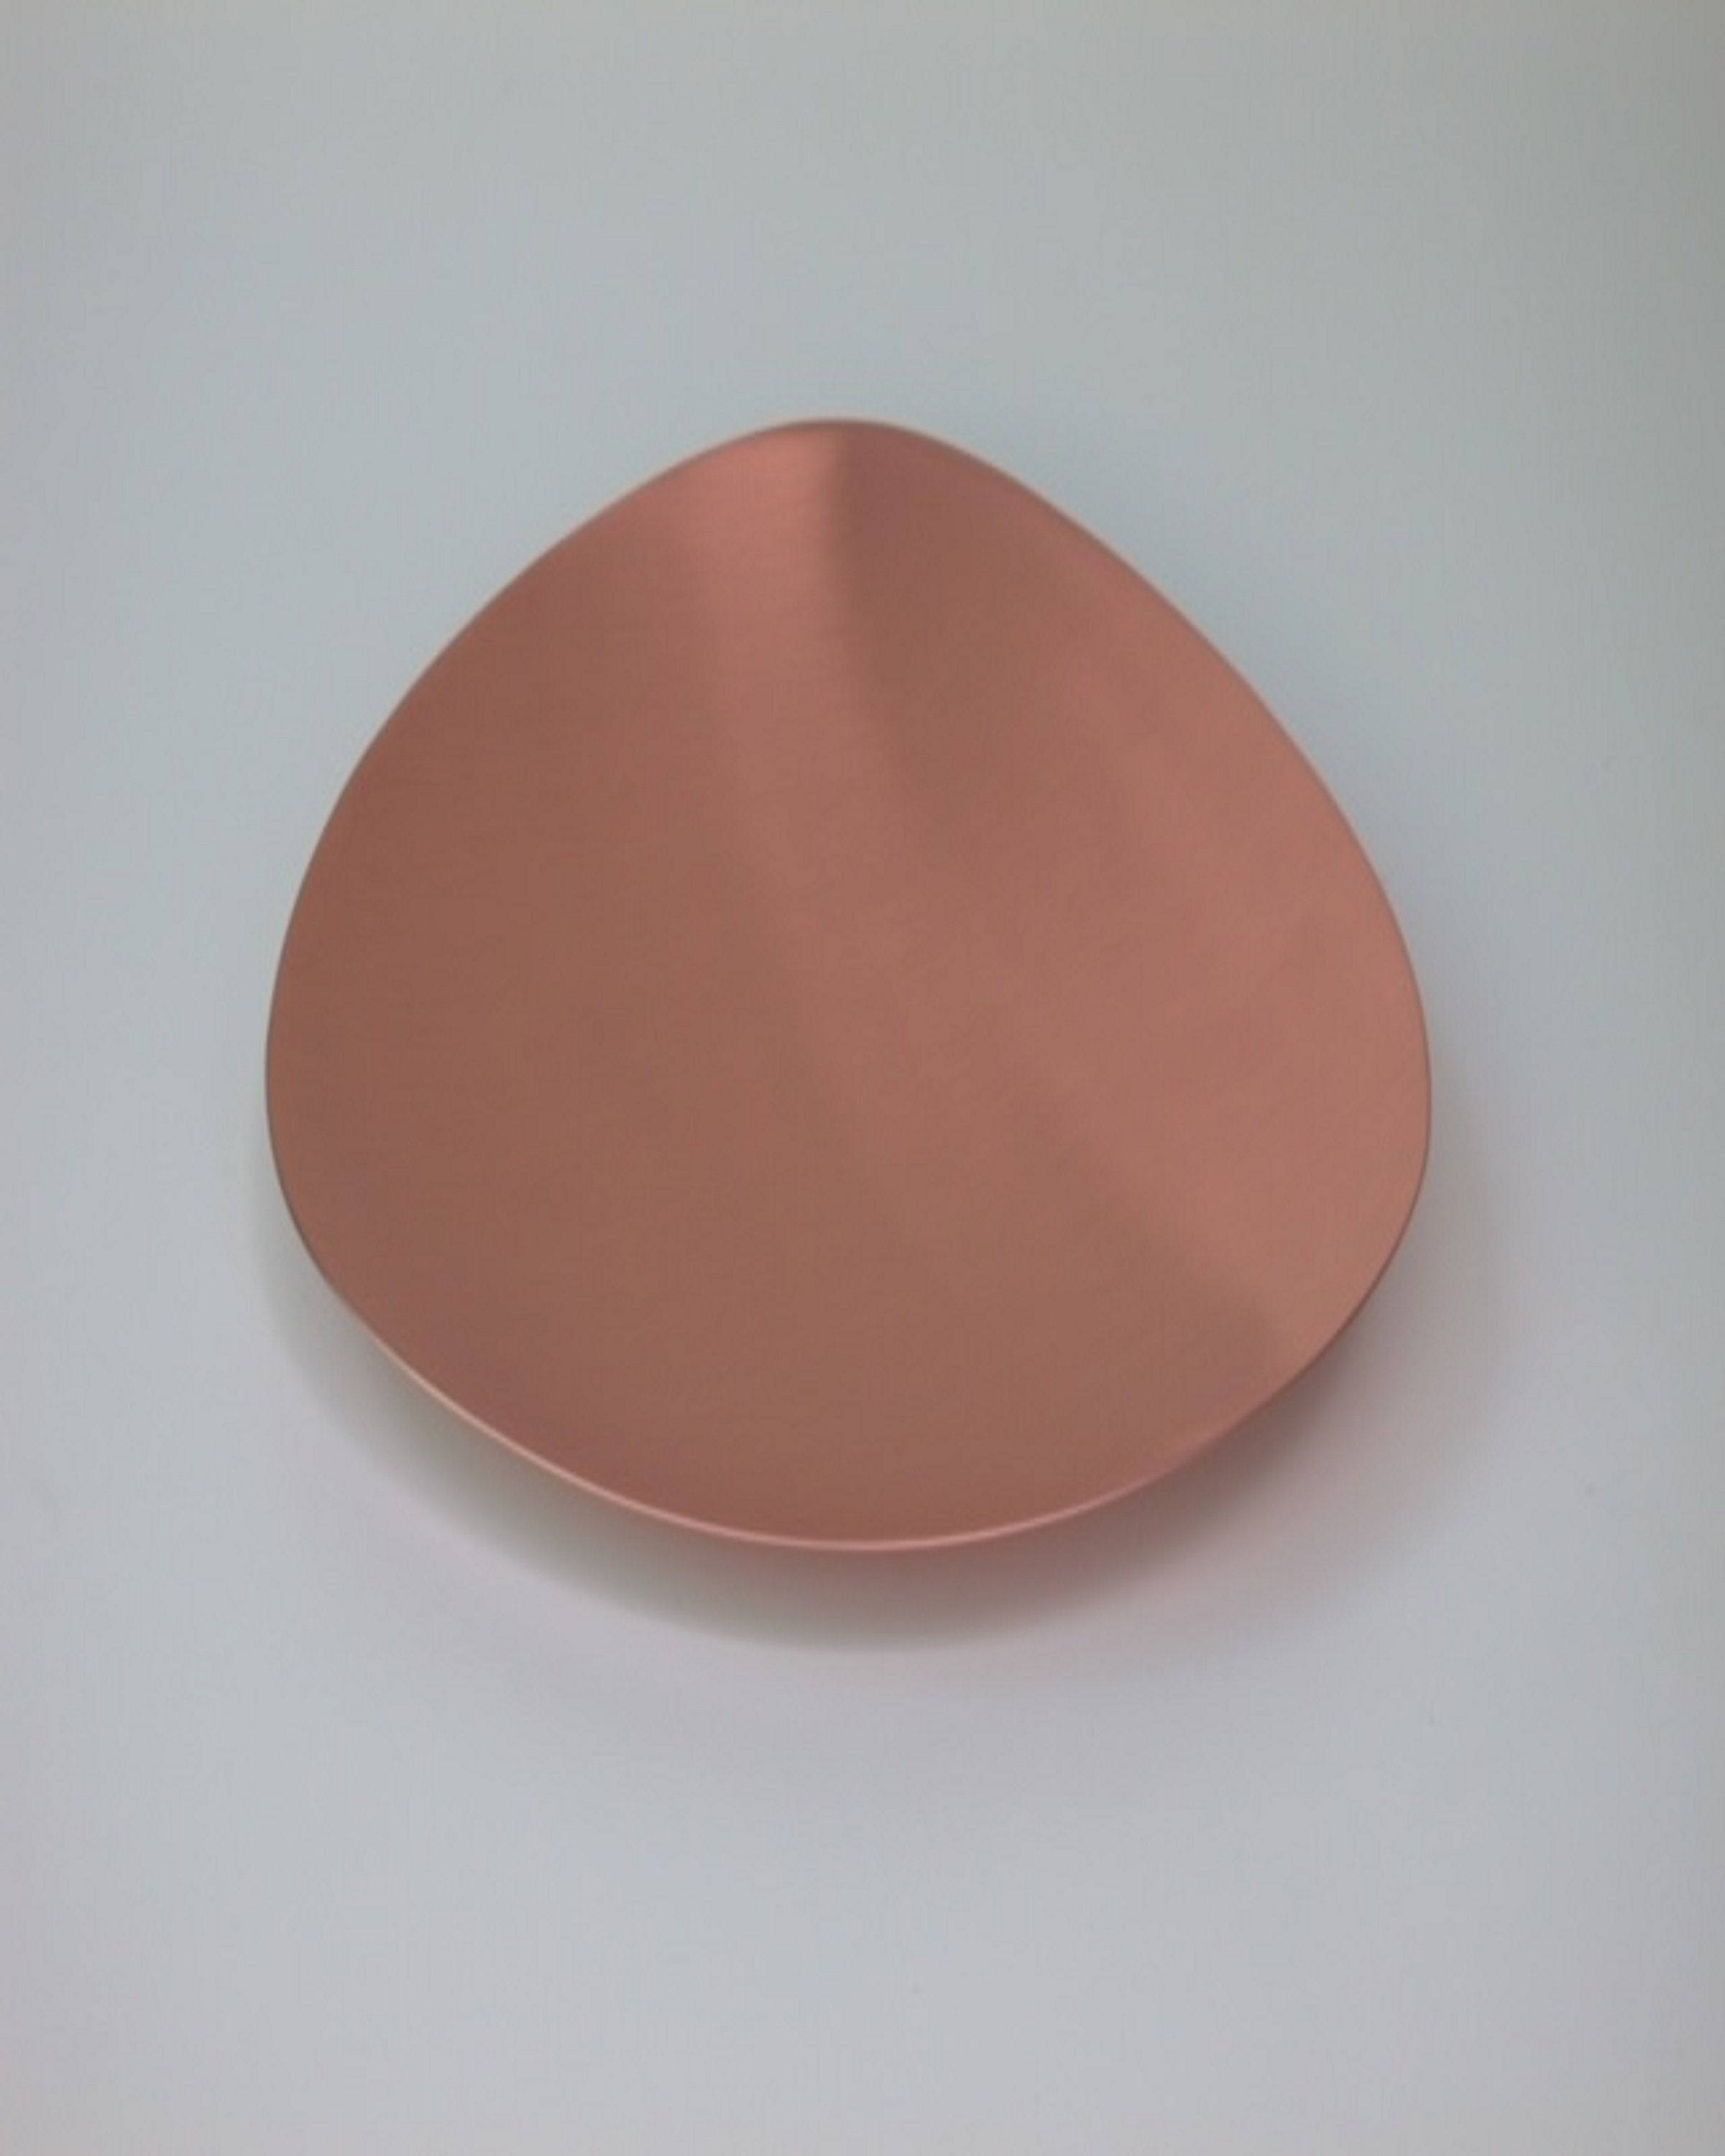 Luxury copper finish server ware